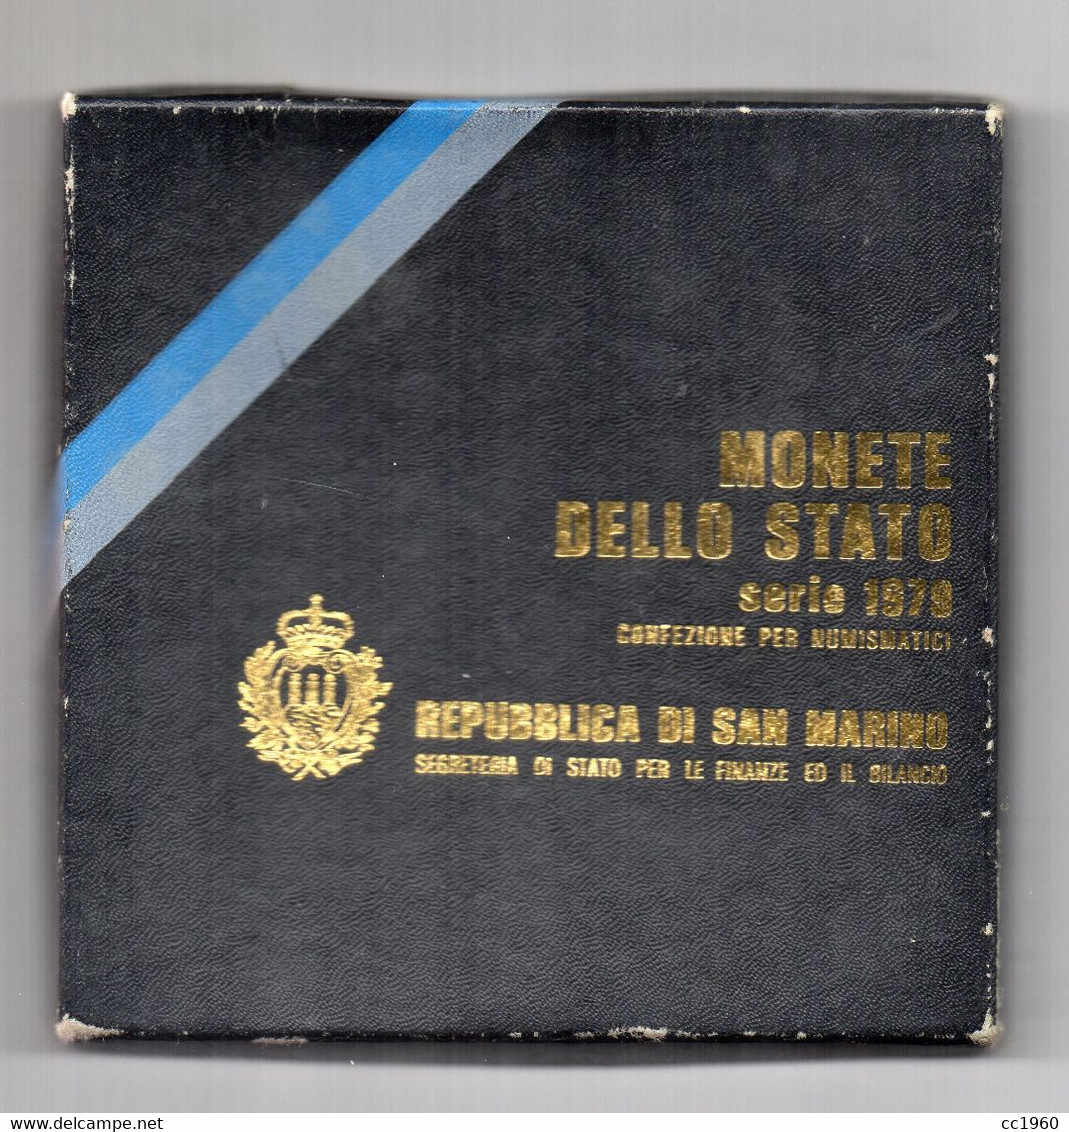 San Marino - 1979 -Serie Divisionale (8 Monete + 500 Argento) - Con Custodia E Garanzia - (FDC24957) - San Marino